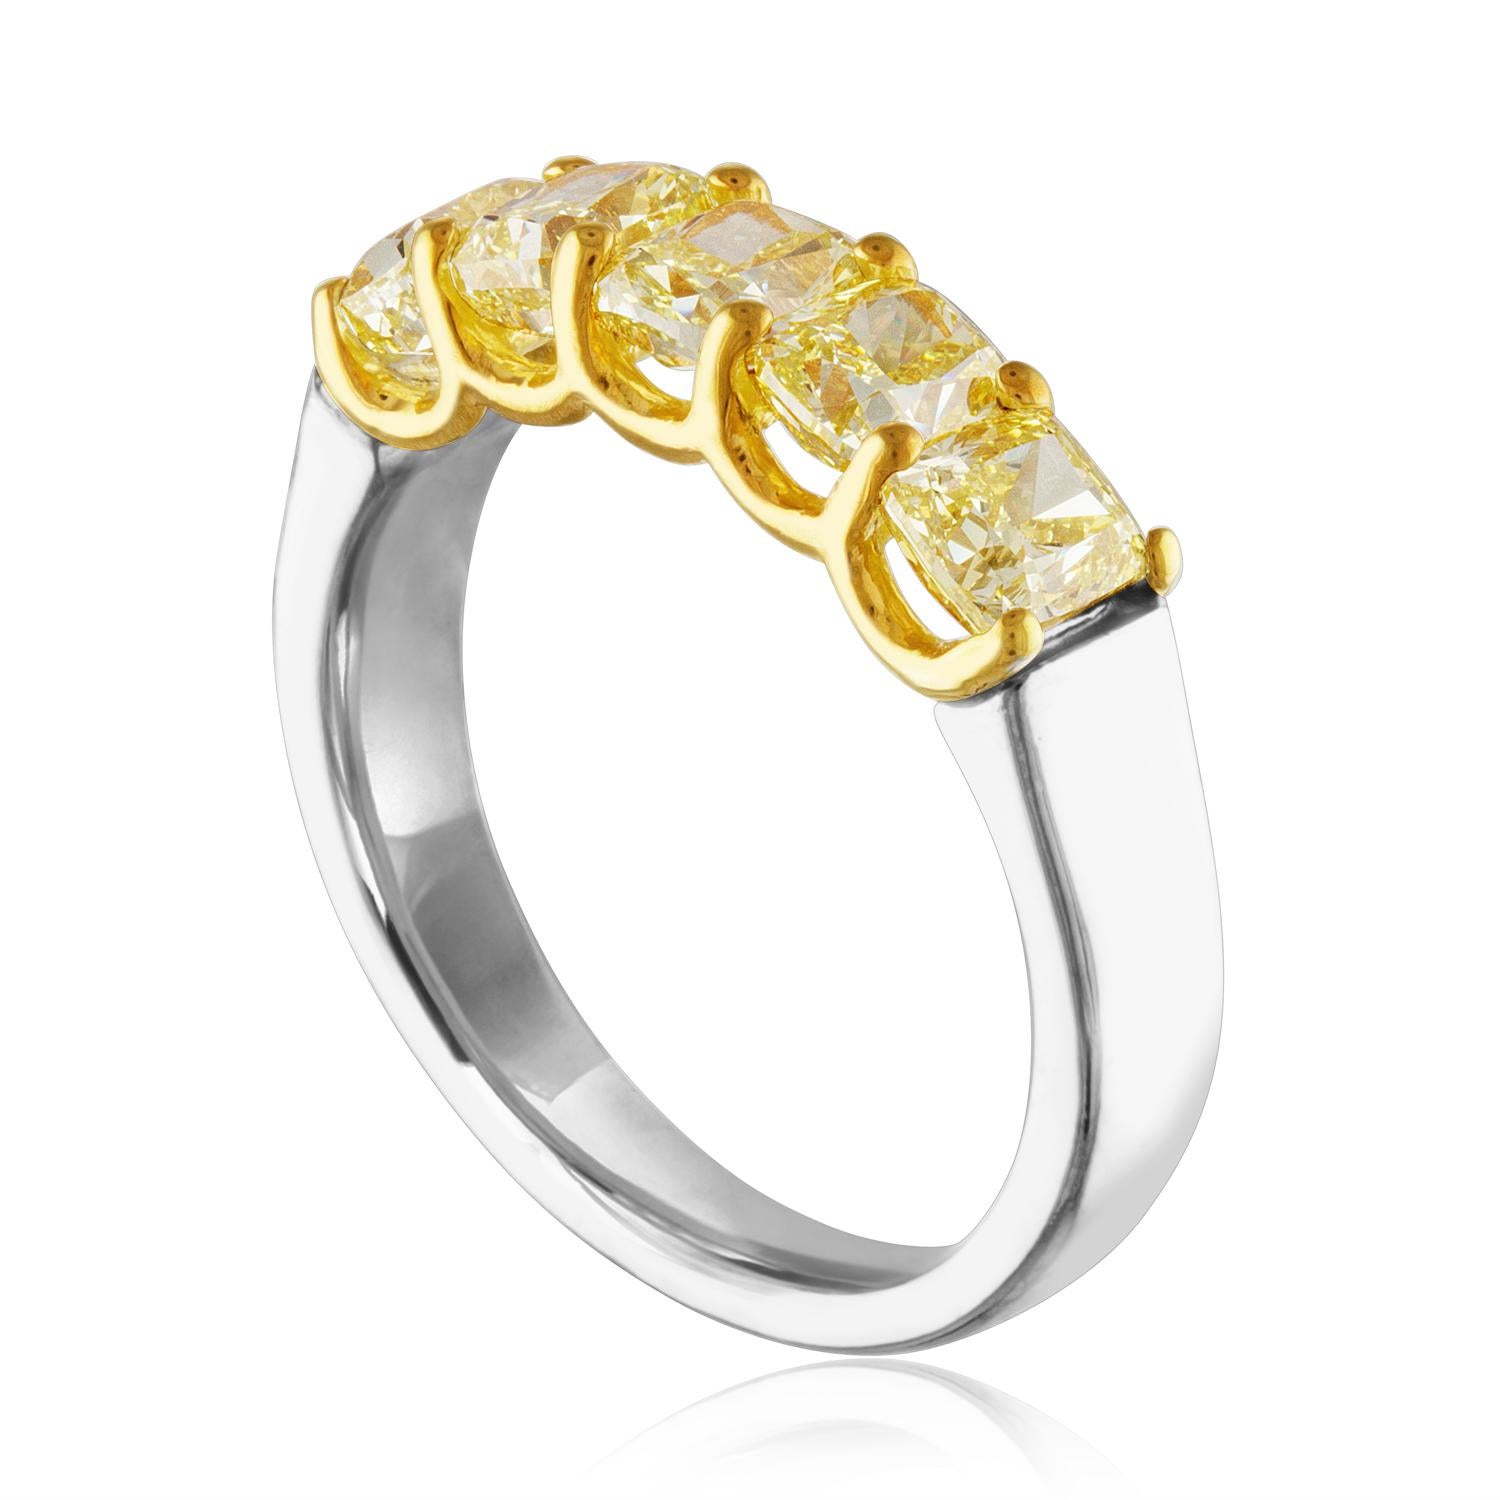 Sehr schöne Diamant 5 Stein Halb Band Ring
Der Ring ist 18K Gelbgold & PLT 950
Es gibt 5 Cushion Cut Fancy Yellow Diamanten Prong Set.
Es gibt 2,12 Karat in Diamanten VS
Der Ring ist eine Größe 5,75, sizable.
Das Band ist 5,0 mm breit.
Der Ring